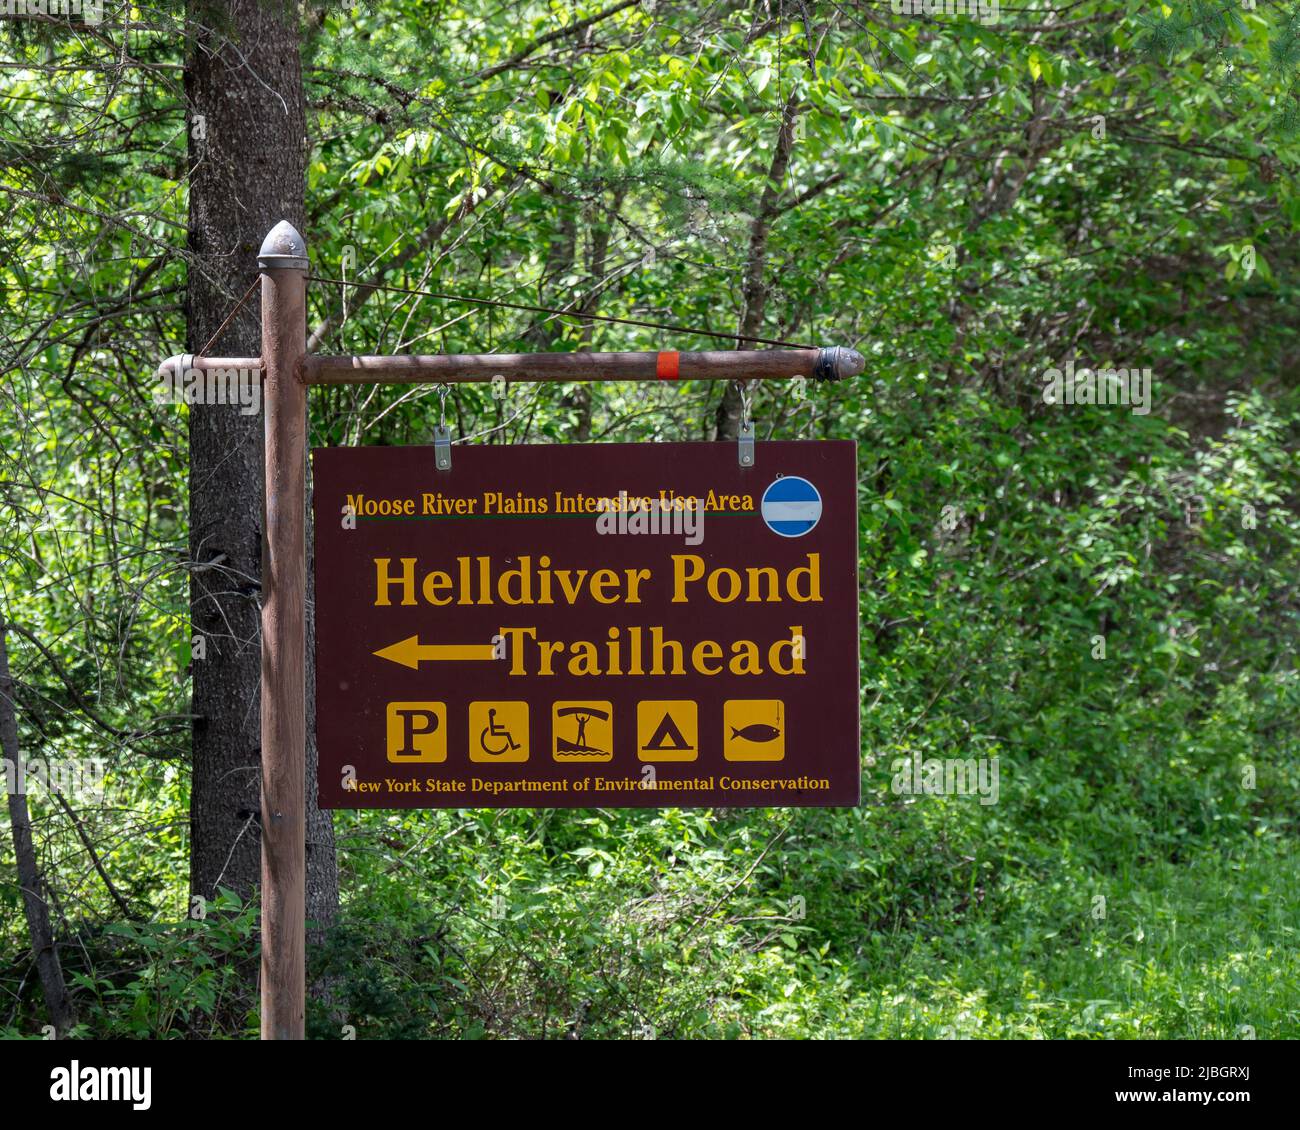 Señal para el sendero de comienzo de la ruta a Helldiver Pond en Moose River Plains en las Adirondack Mountains, NY USA Foto de stock